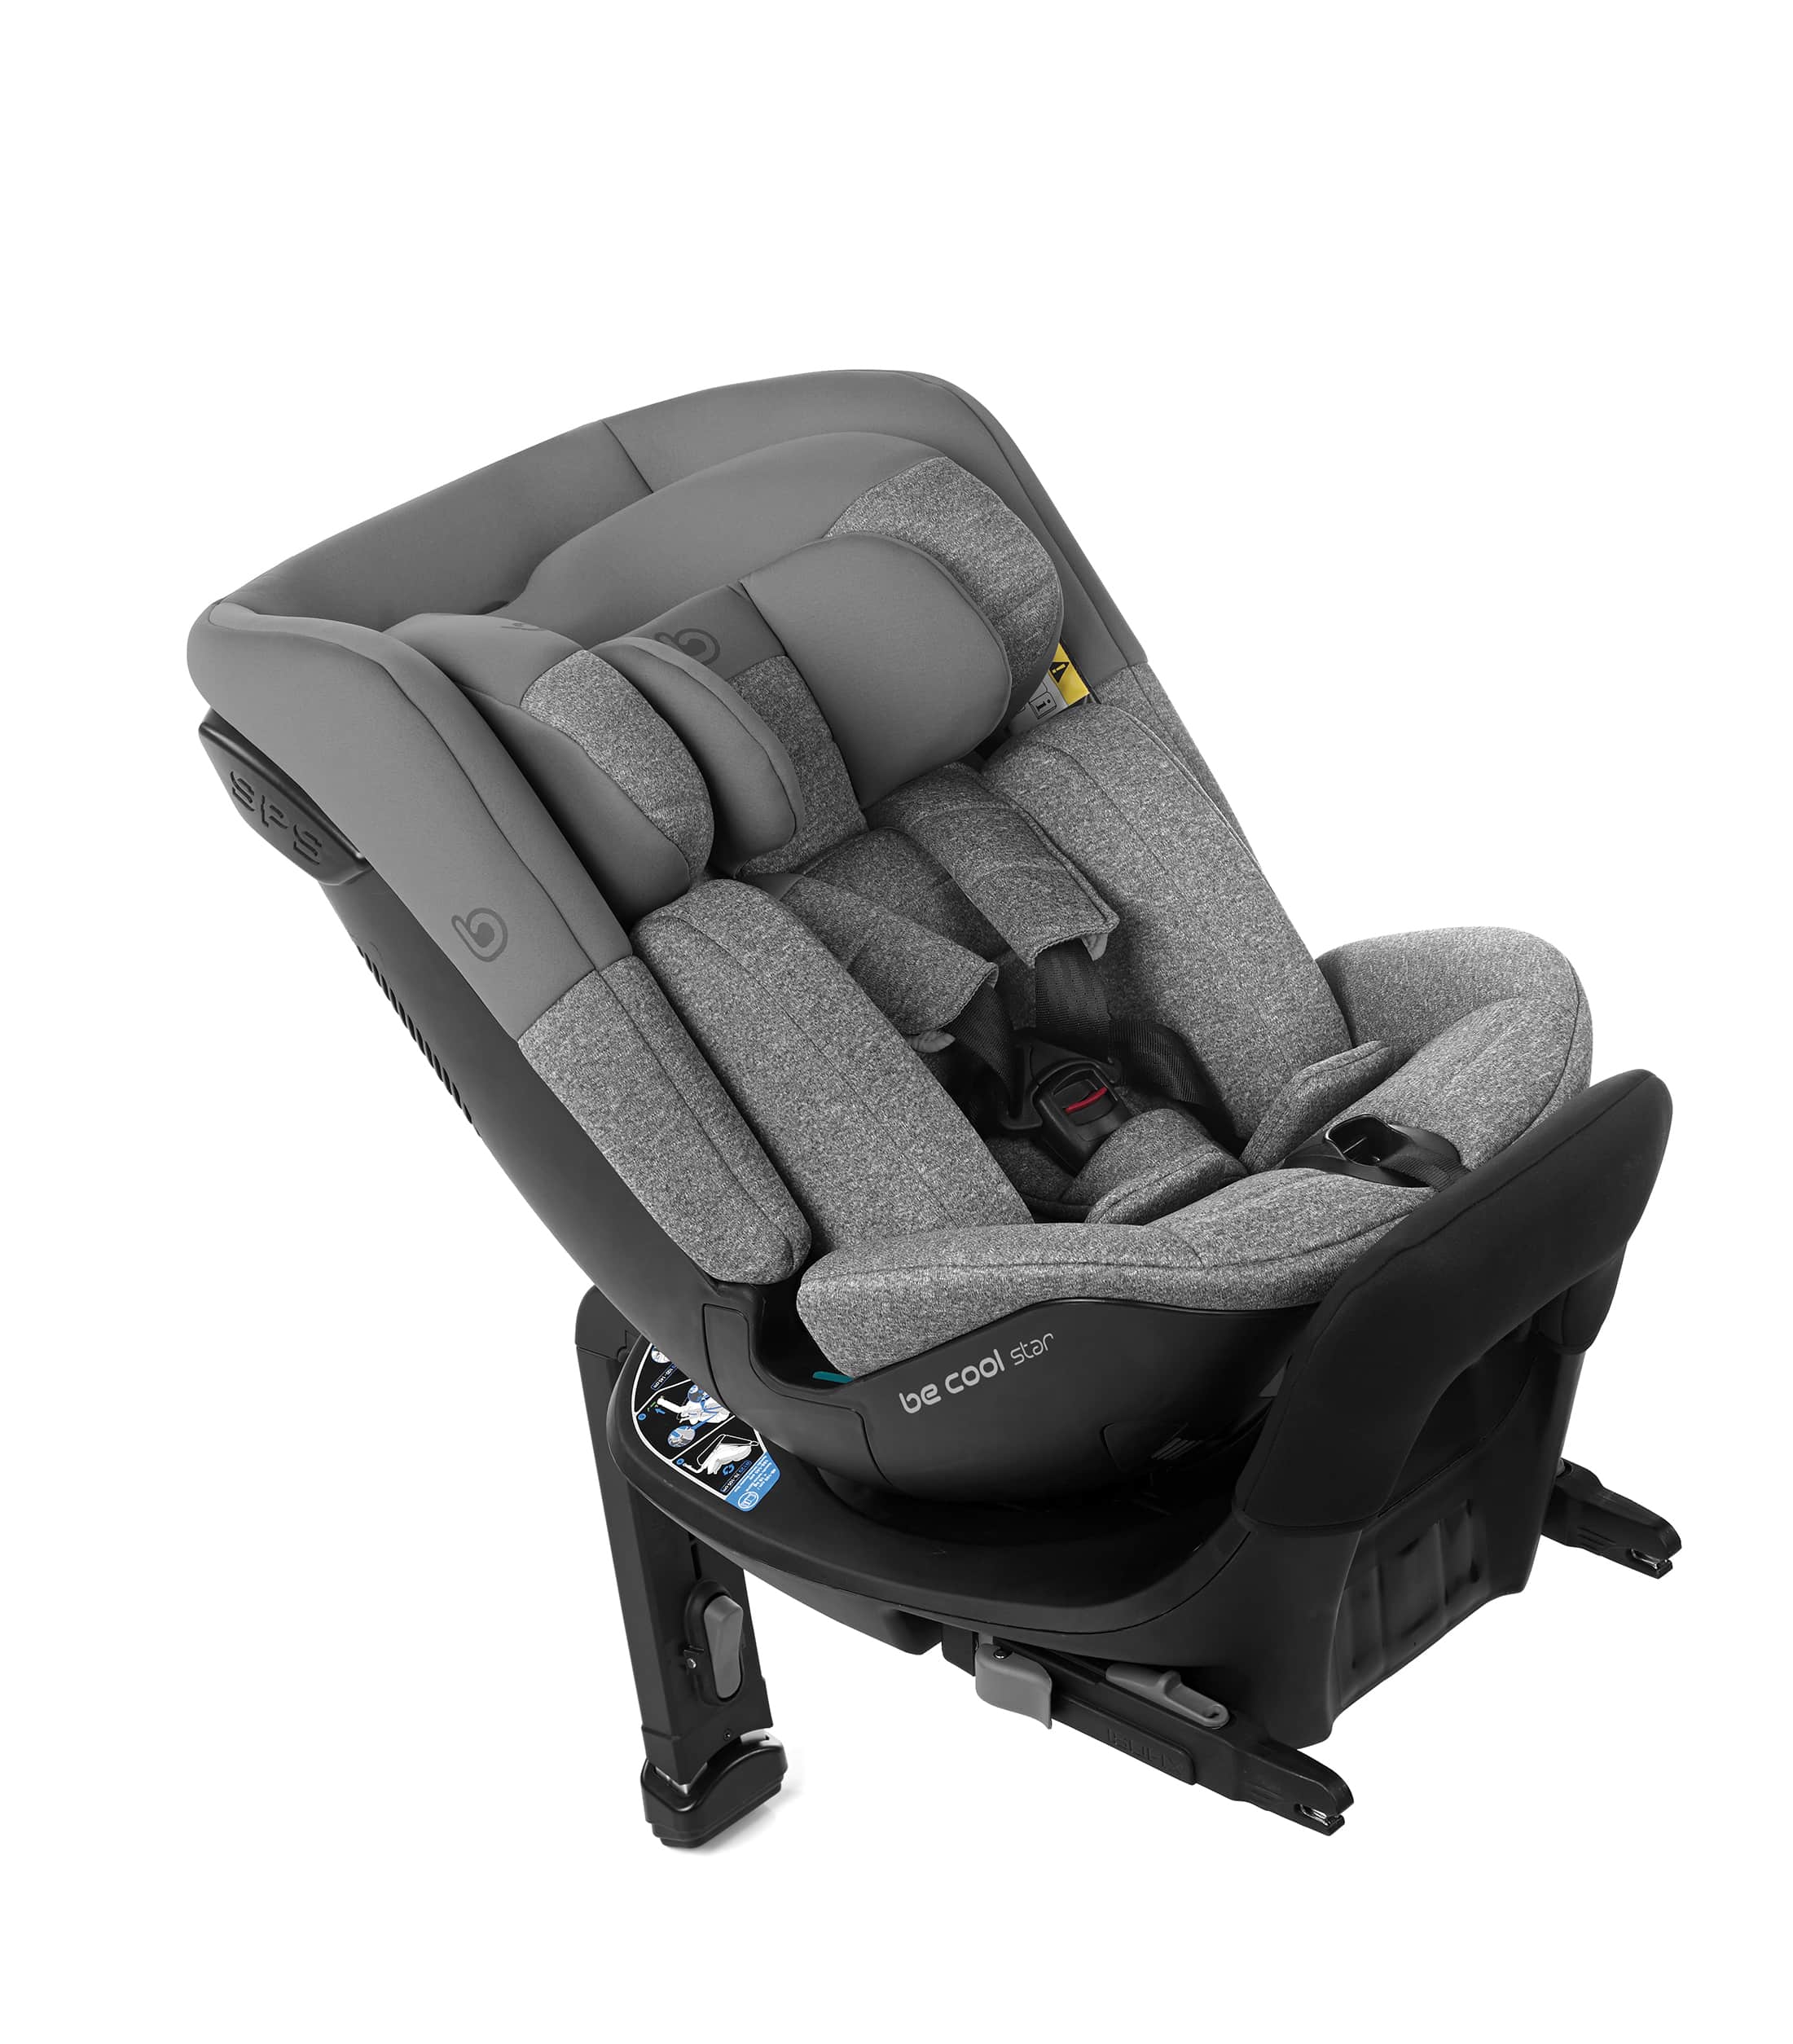 Silla de auto Be Cool Star La silla de auto de bebé modelo Star de Becool es un producto excepcional diseñado para brindar comodidad y seguridad a los pequeños mientras viajan en el coche.